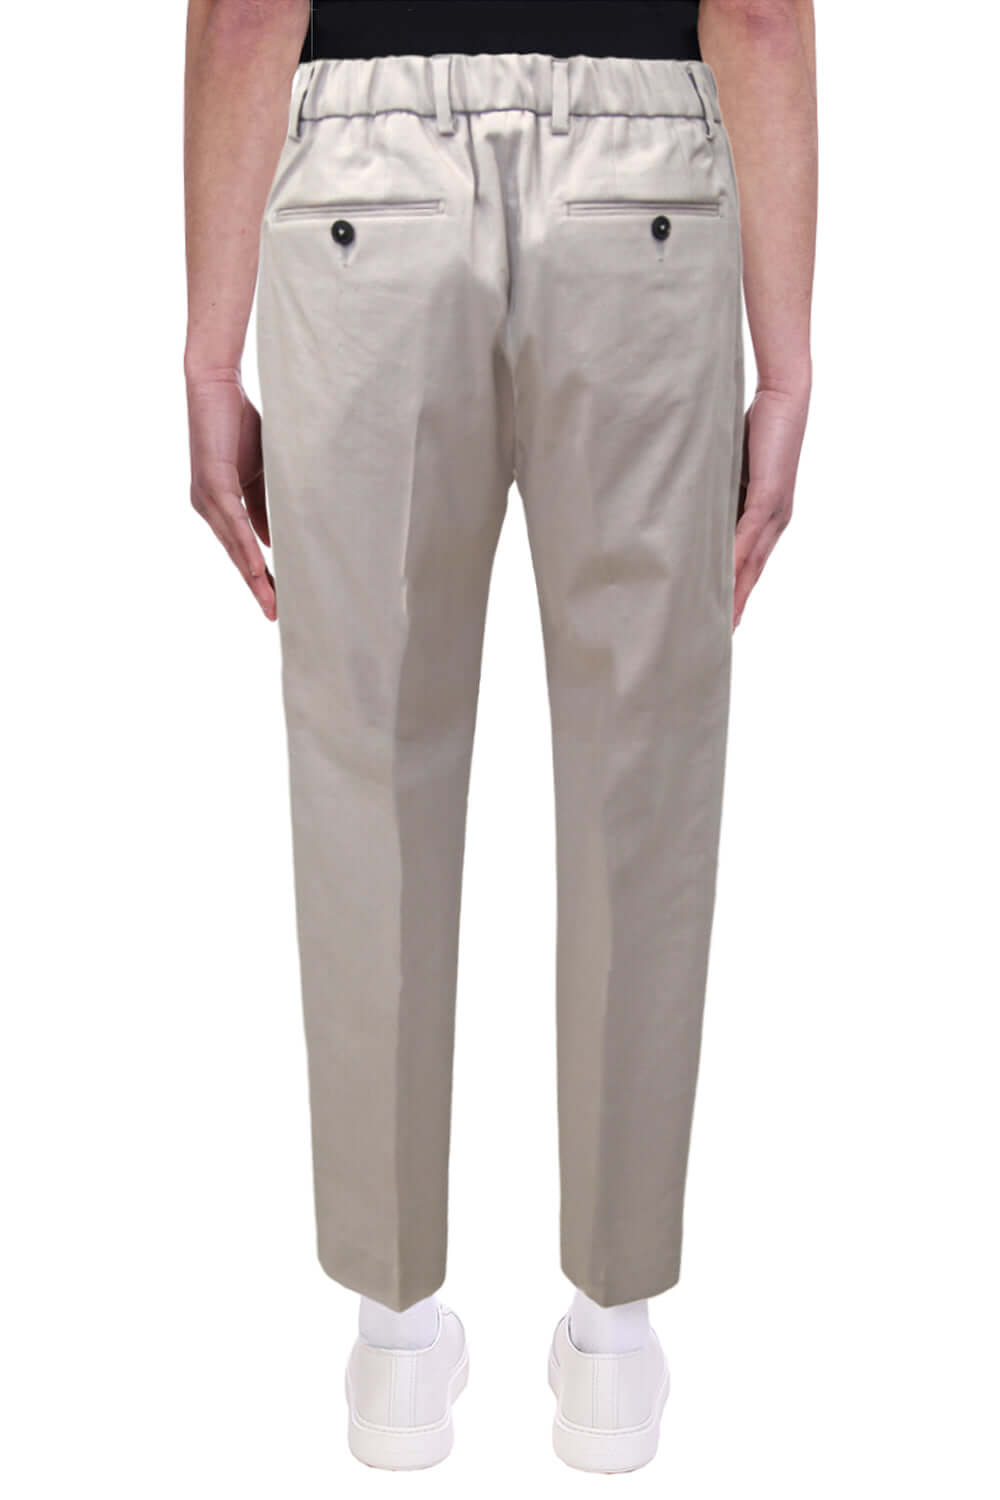 Pantalone con pence ed elastico - BE ABLE Pantaloni e jeans BE ABLE   